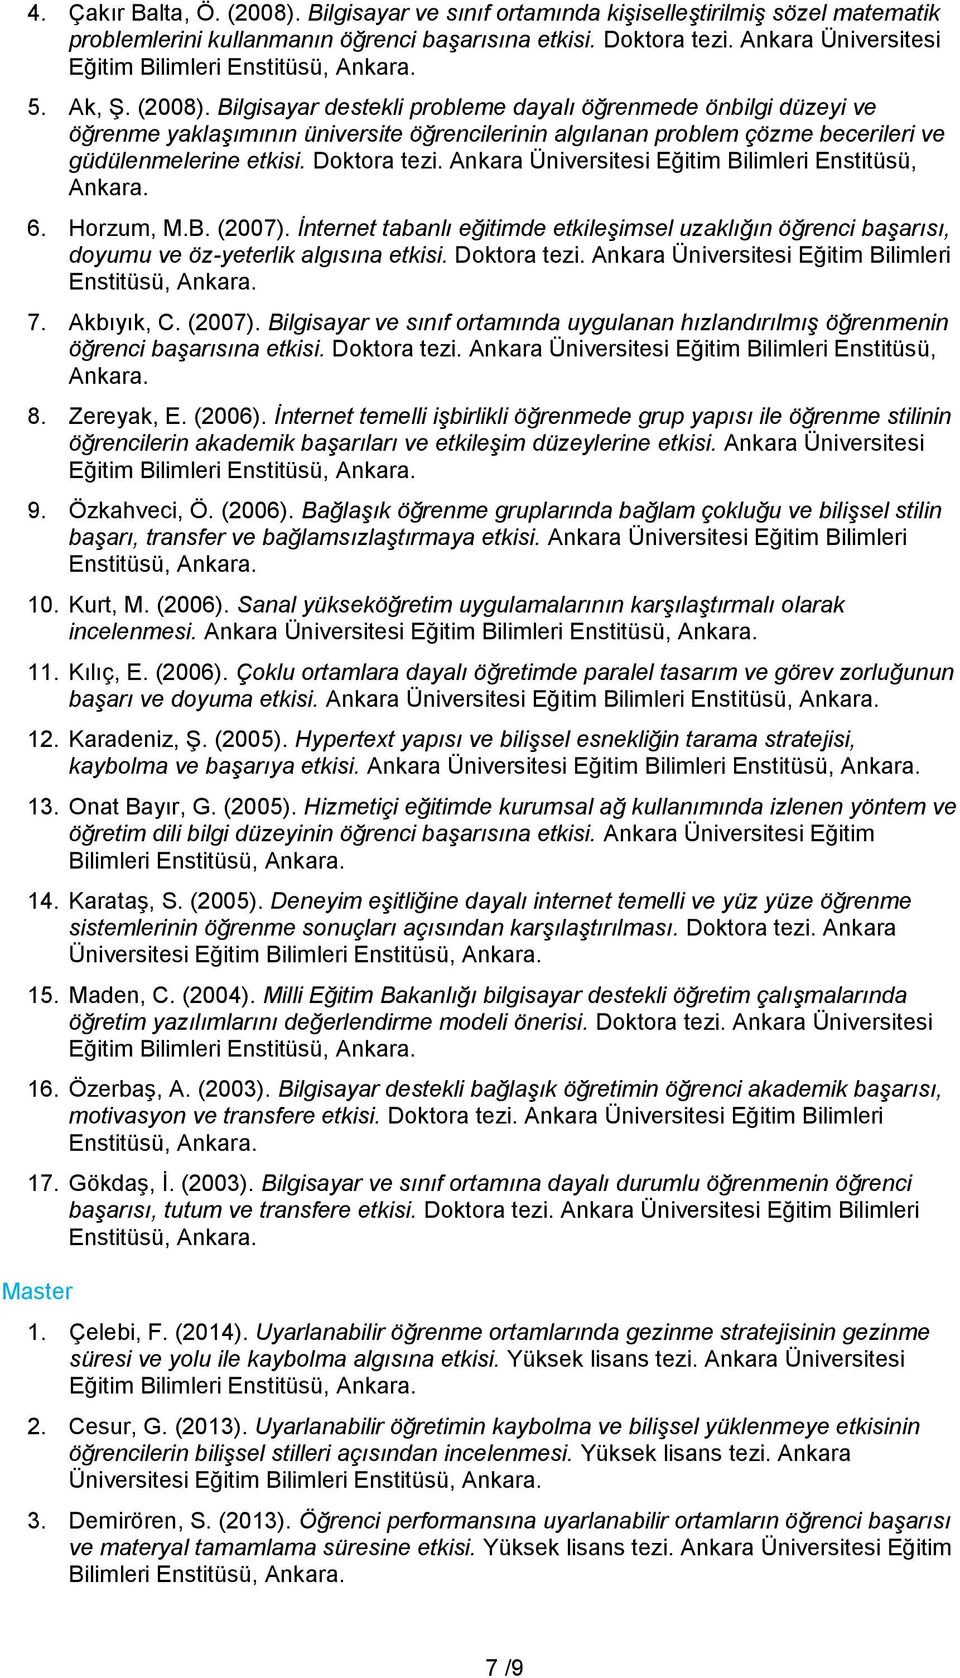 Ankara Üniversitesi Eğitim Bilimleri Enstitüsü, Ankara. 6. Horzum, M.B. (2007). İnternet tabanlı eğitimde etkileşimsel uzaklığın öğrenci başarısı, doyumu ve öz-yeterlik algısına etkisi. Doktora tezi.